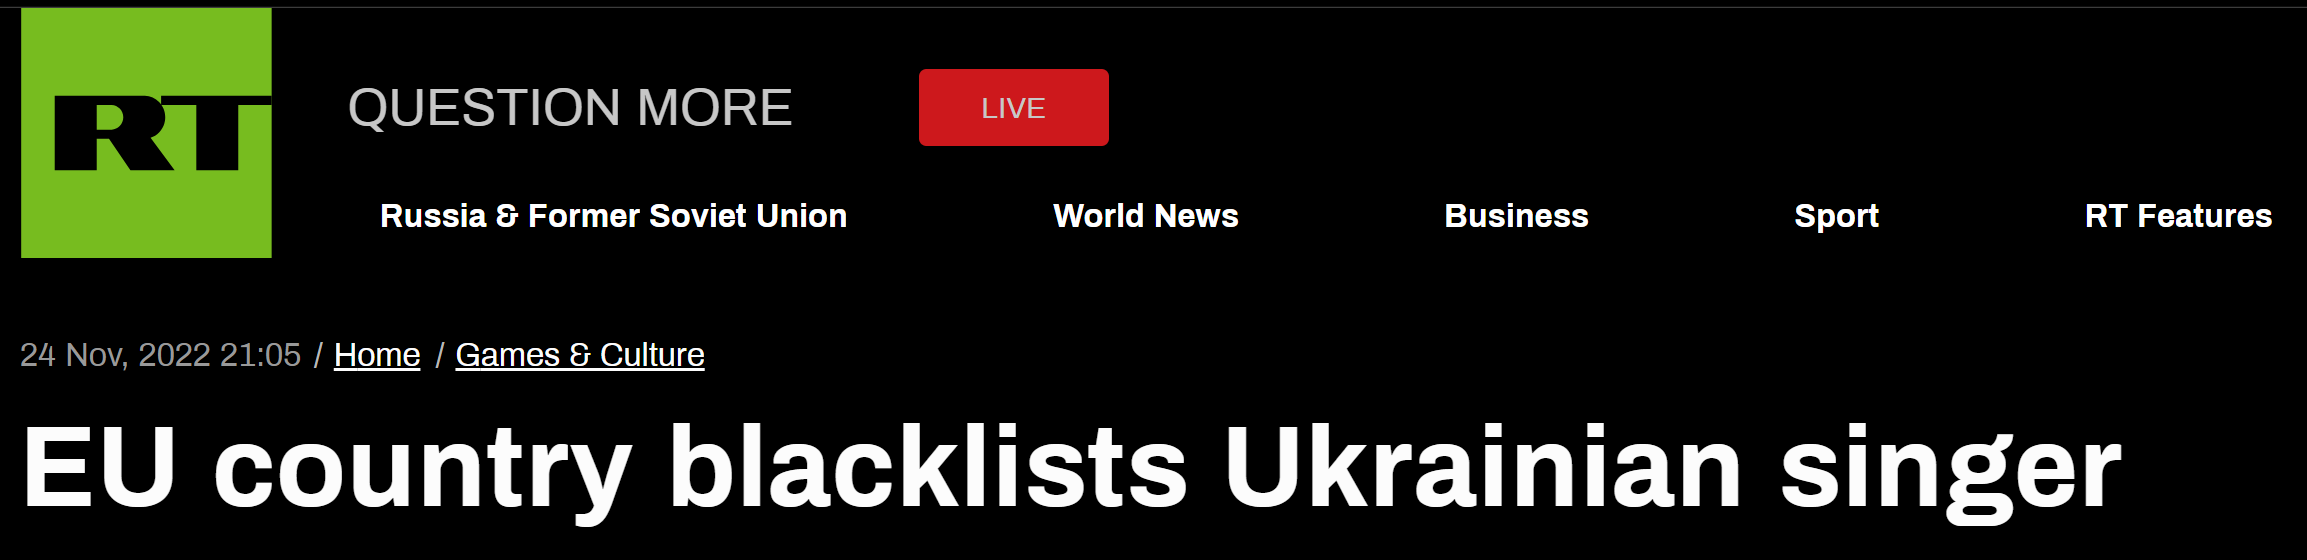 RT：欧盟国家将乌克兰歌手列入黑名单